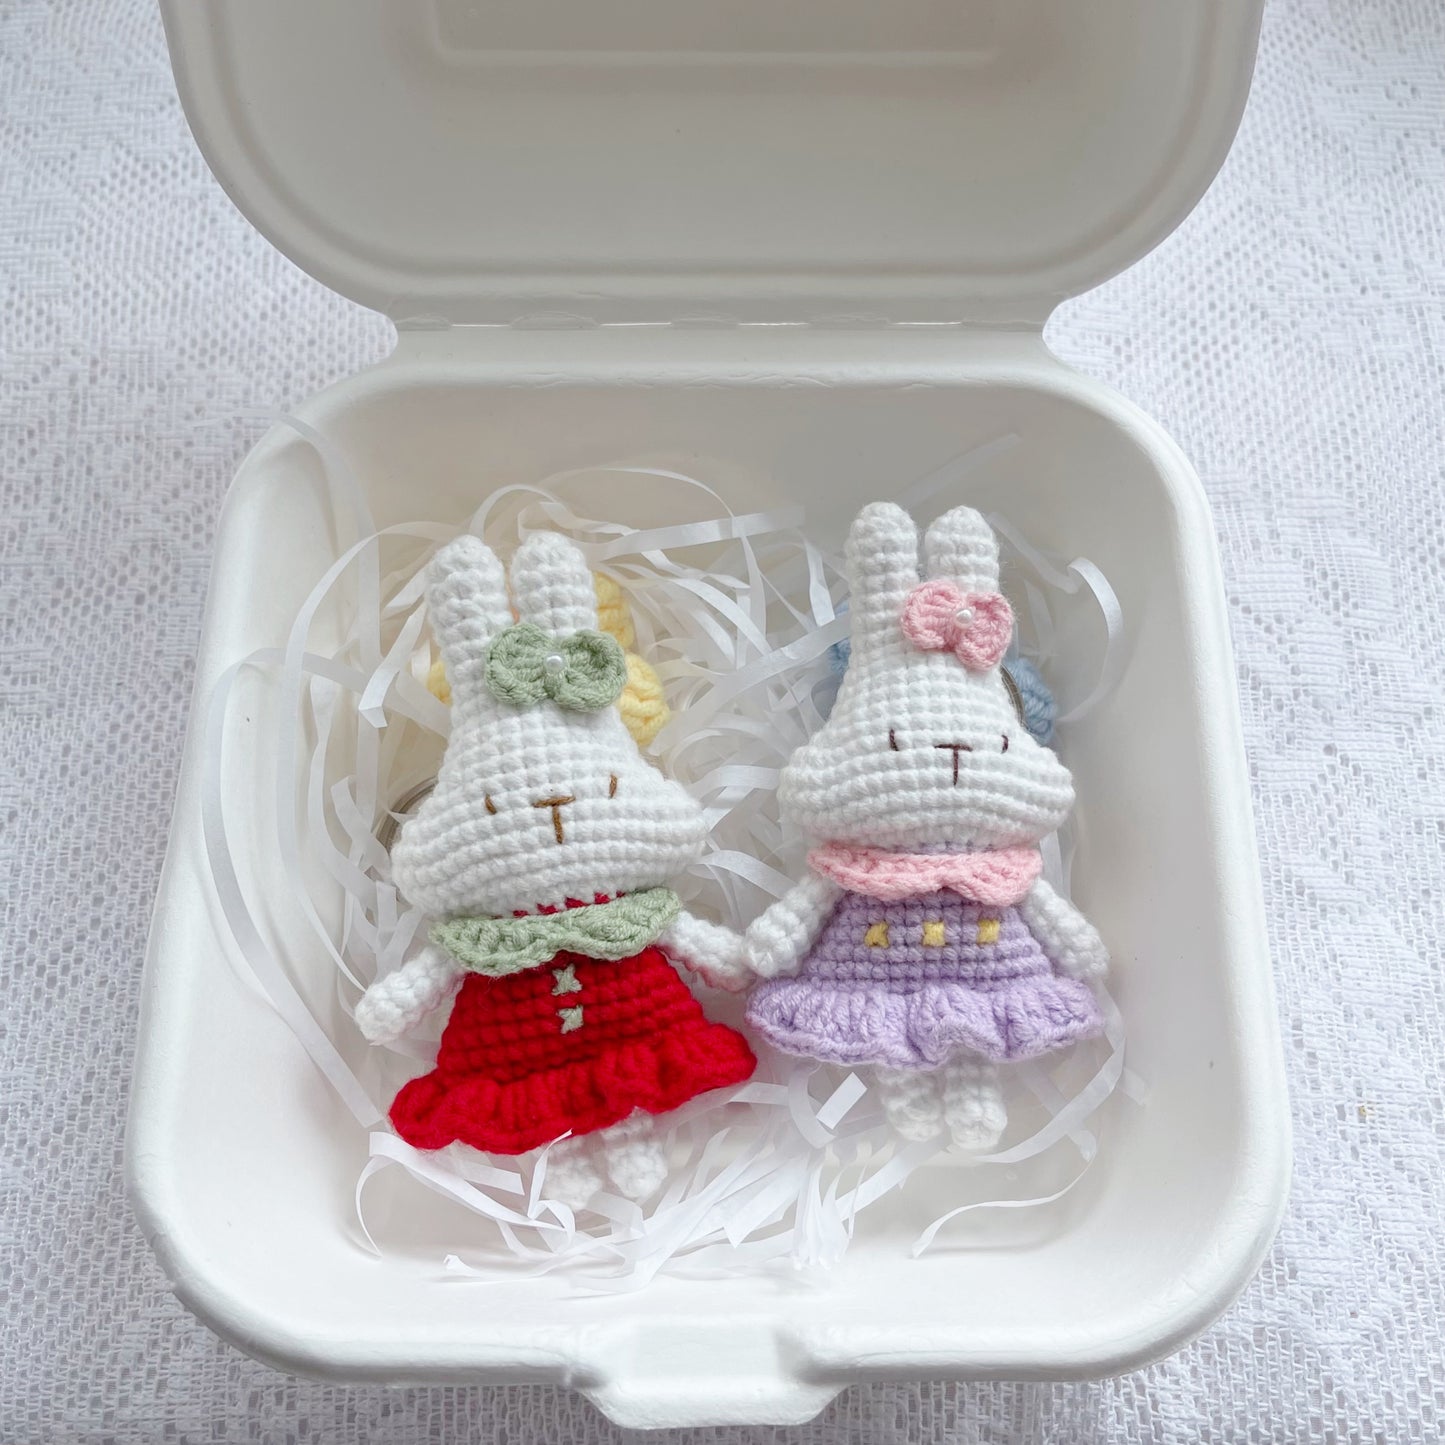 crochet bunnies bff keychain ໒꒰ྀིっ˕ -｡꒱ྀི১💞